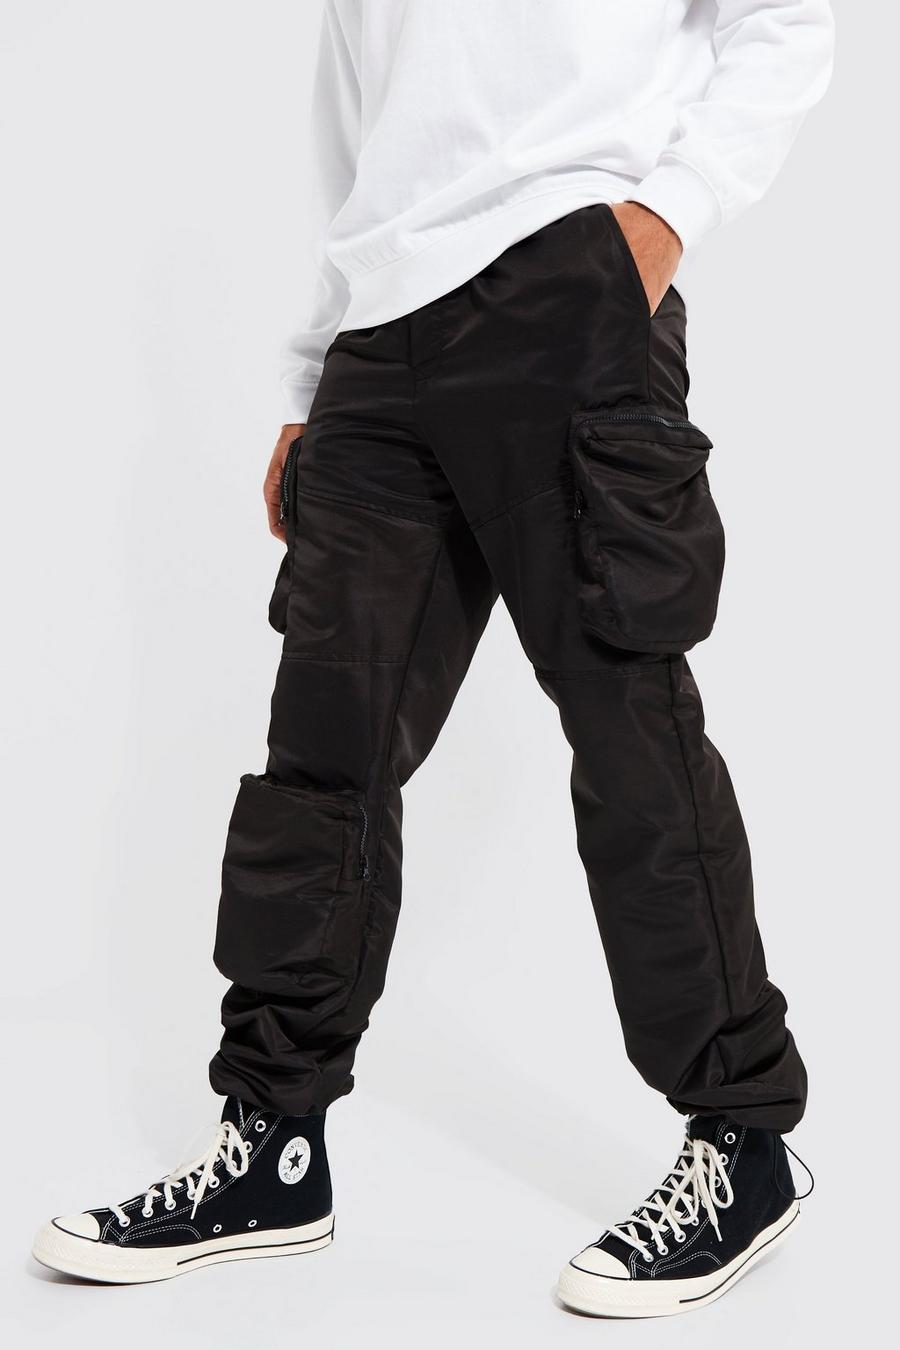 Pantalón Tall cargo holgado estilo obrero de tela shell 3D, Black negro